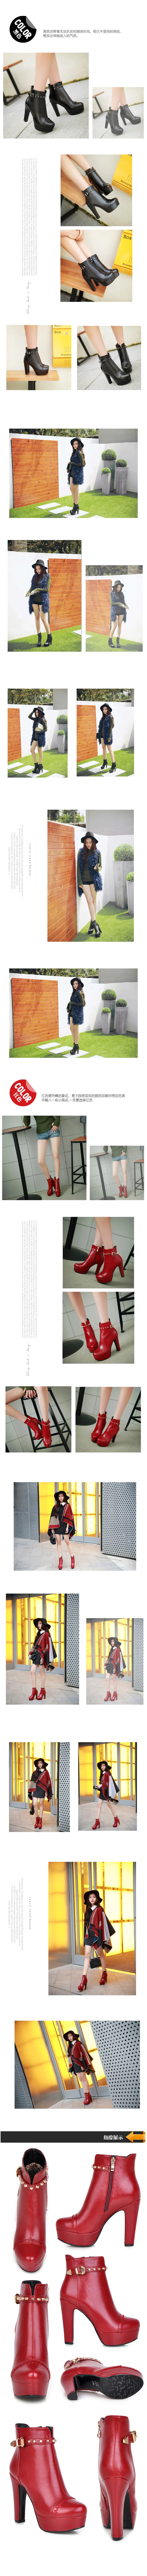 Дамские Зимние ботильоны по щиколотку на высоком каблуке botas masculina zapatos botines mujer chaussure femme, женские ботинки 603-2